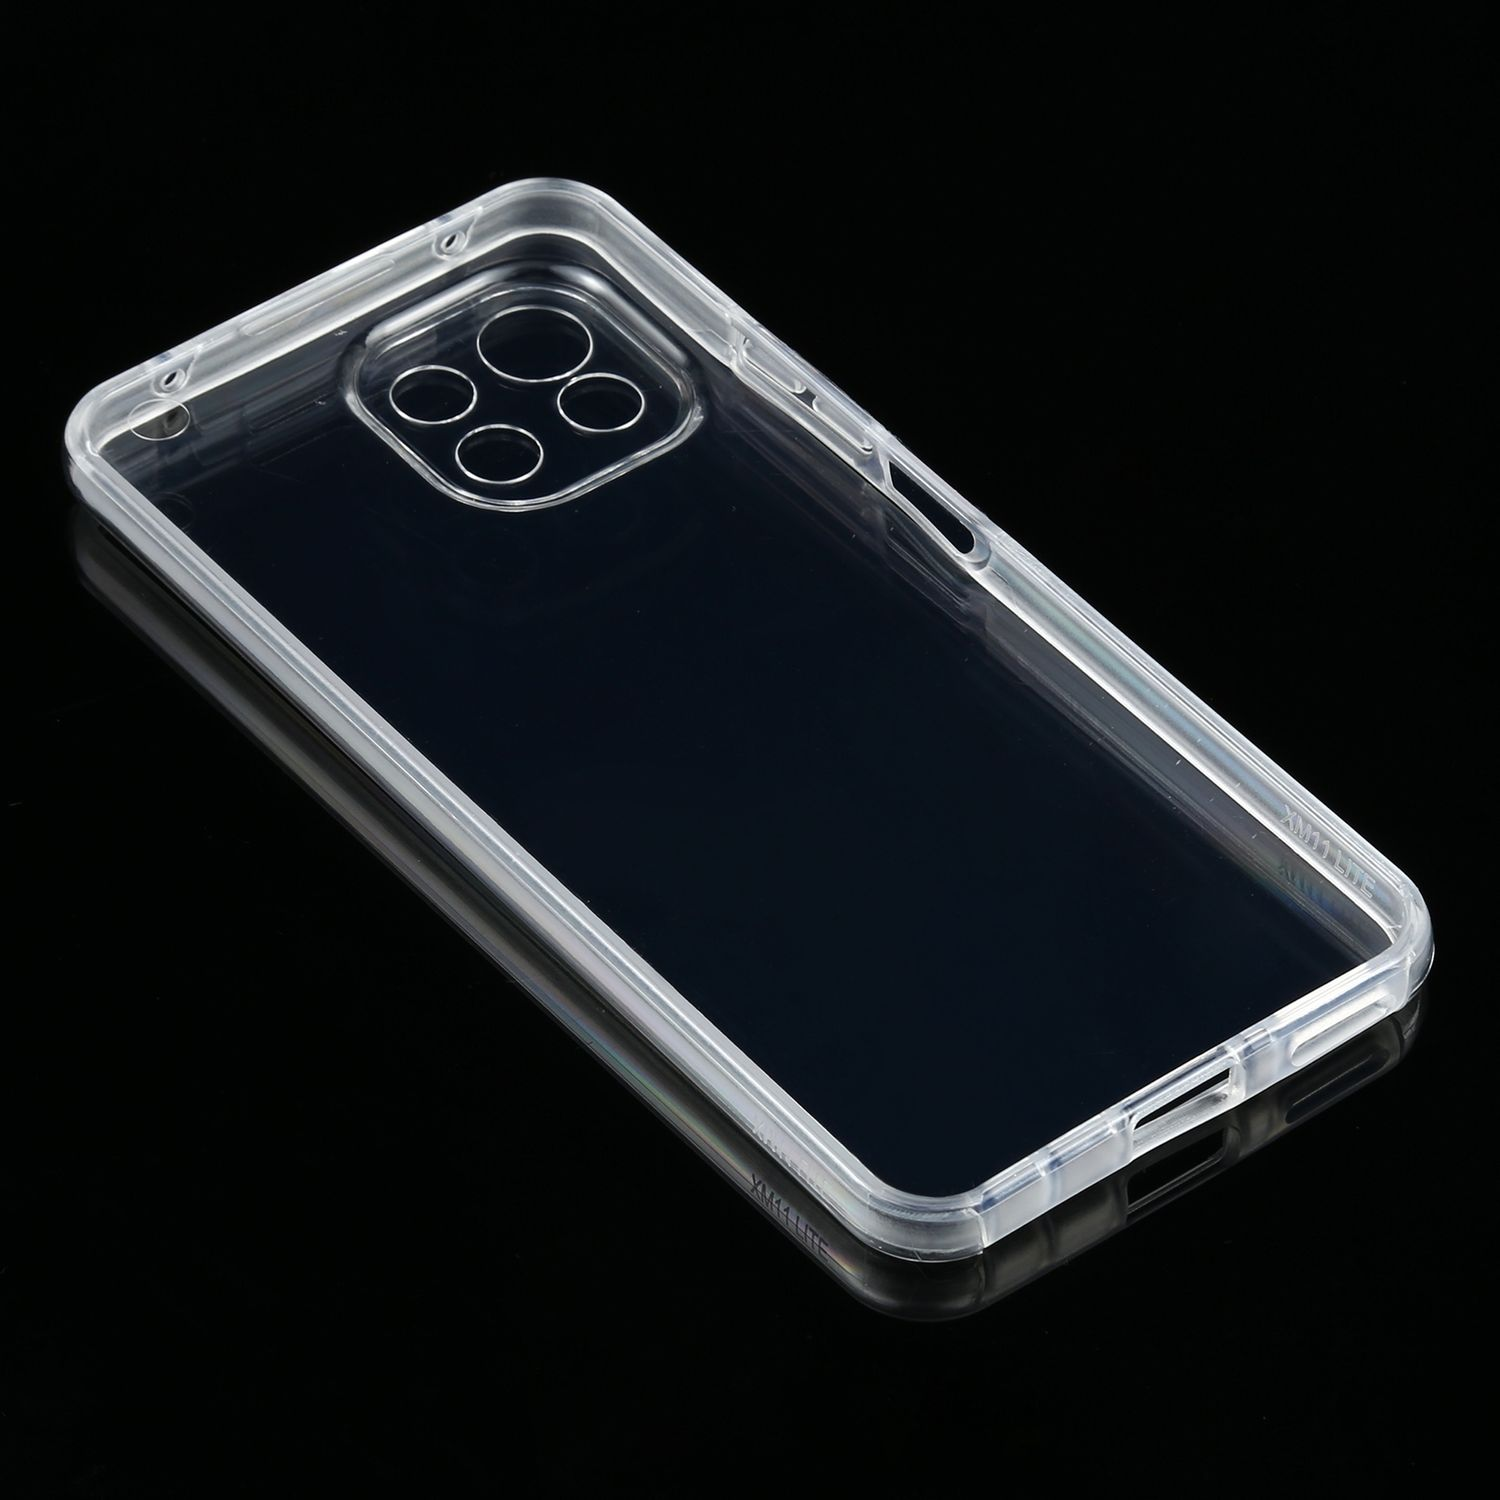 KÖNIG DESIGN 11 Lite, Transparent Cover, Full Mi Xiaomi, Case